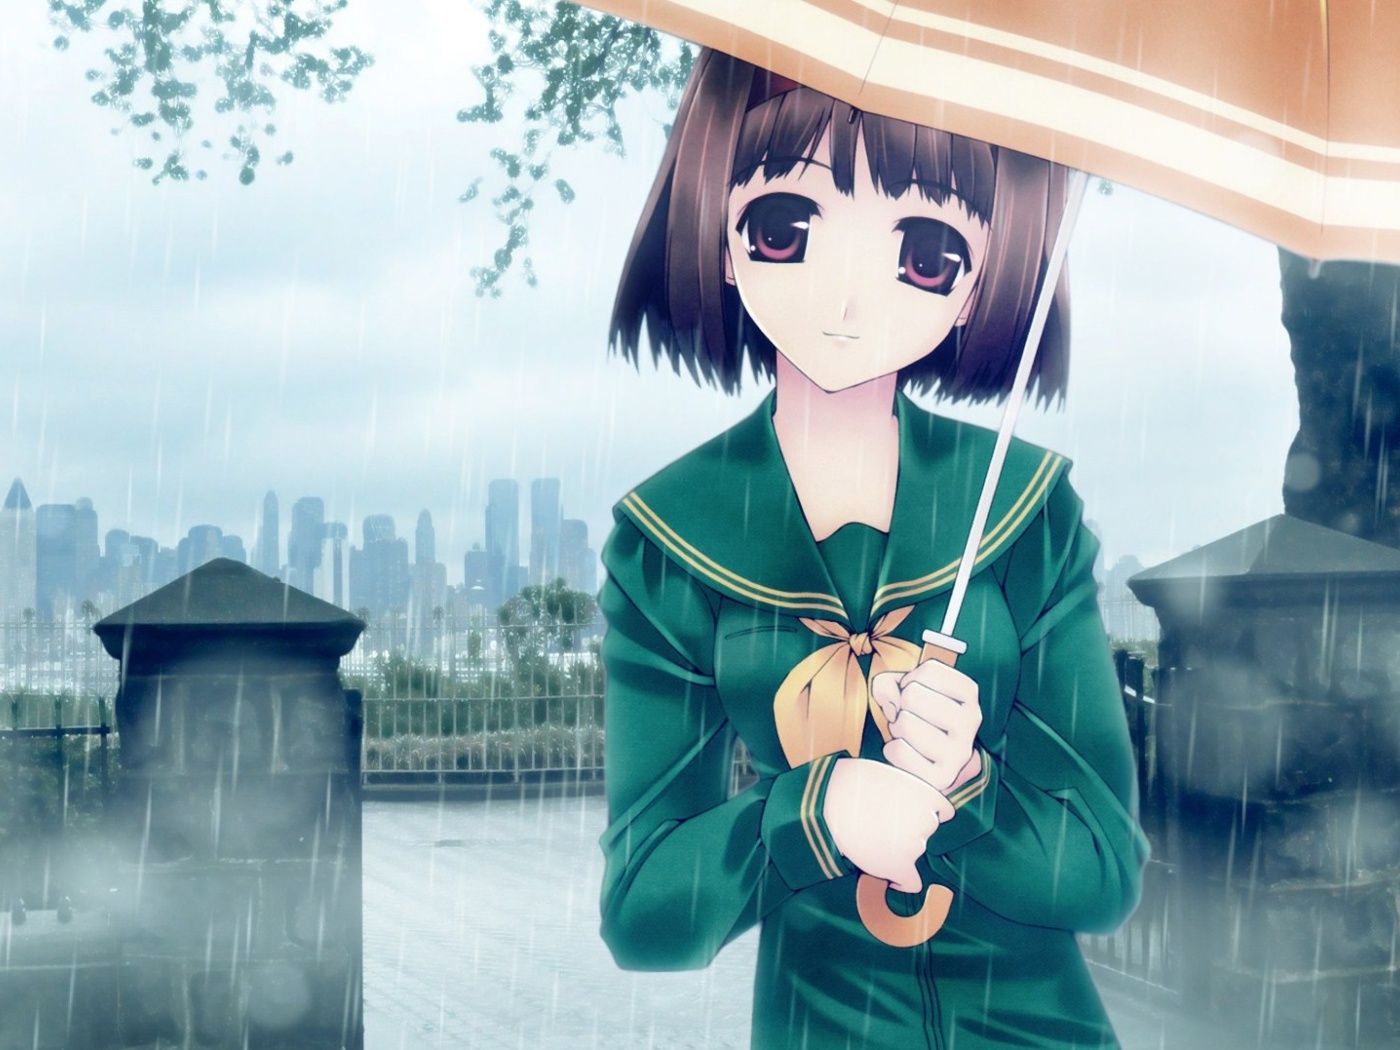 Обои Anime girl in rain 1400x1050